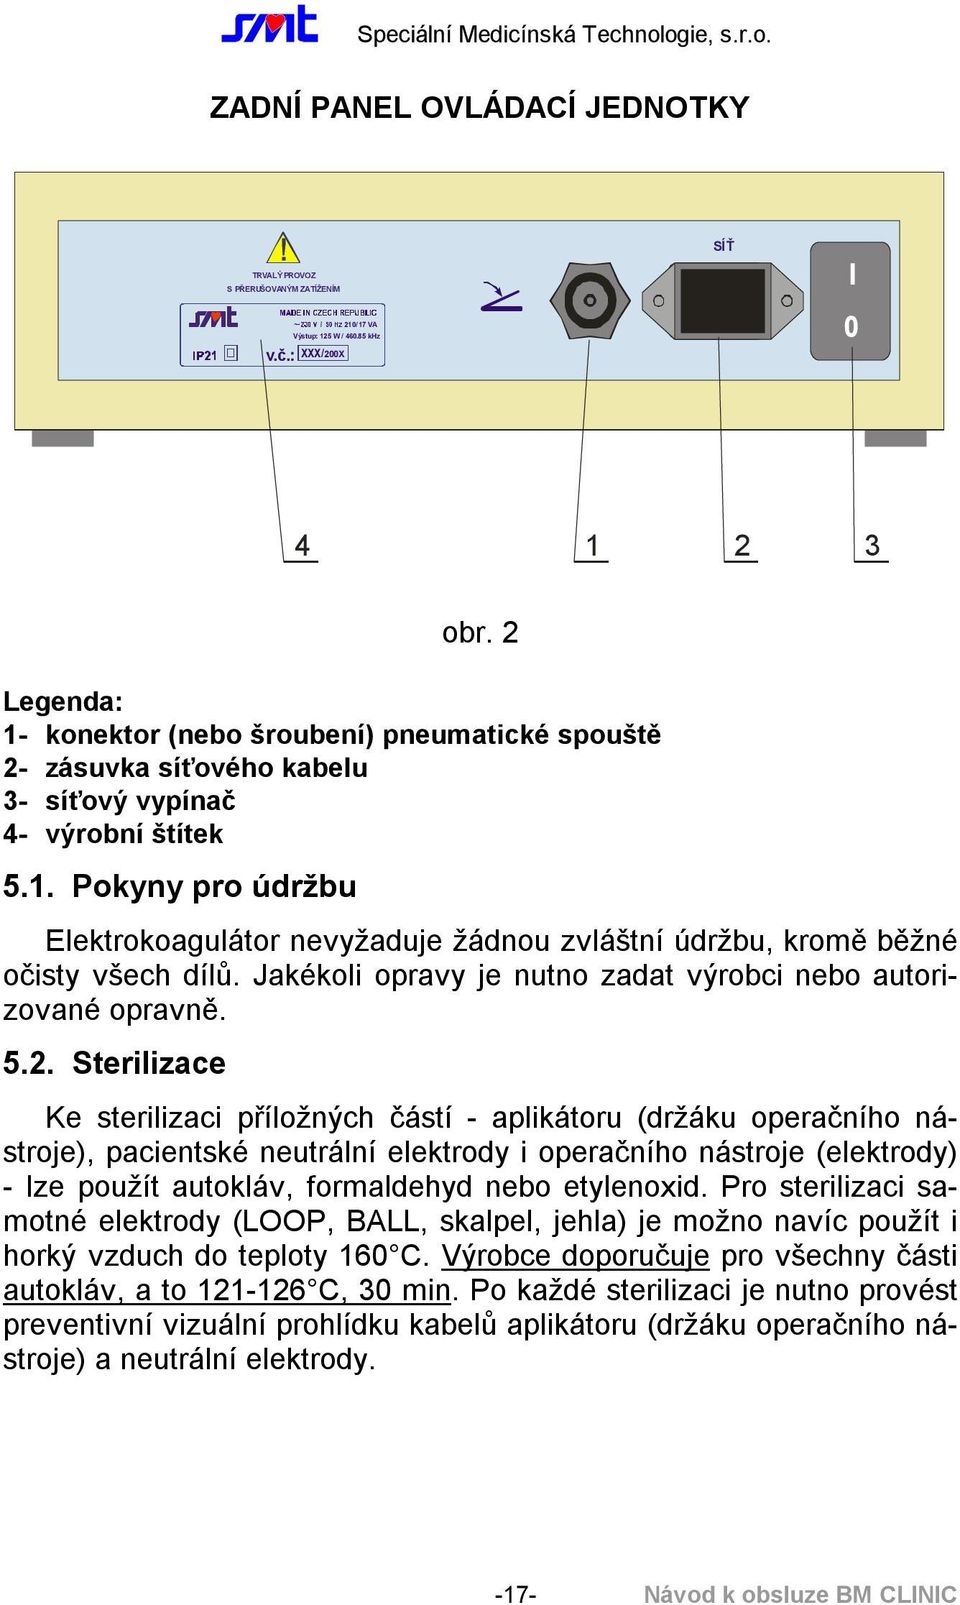 Speciální Medicínská Technologie, s.r.o. Elektrochirurgický přístroj SMT BM  CLINIC 170W. Návod k obsluze - PDF Stažení zdarma